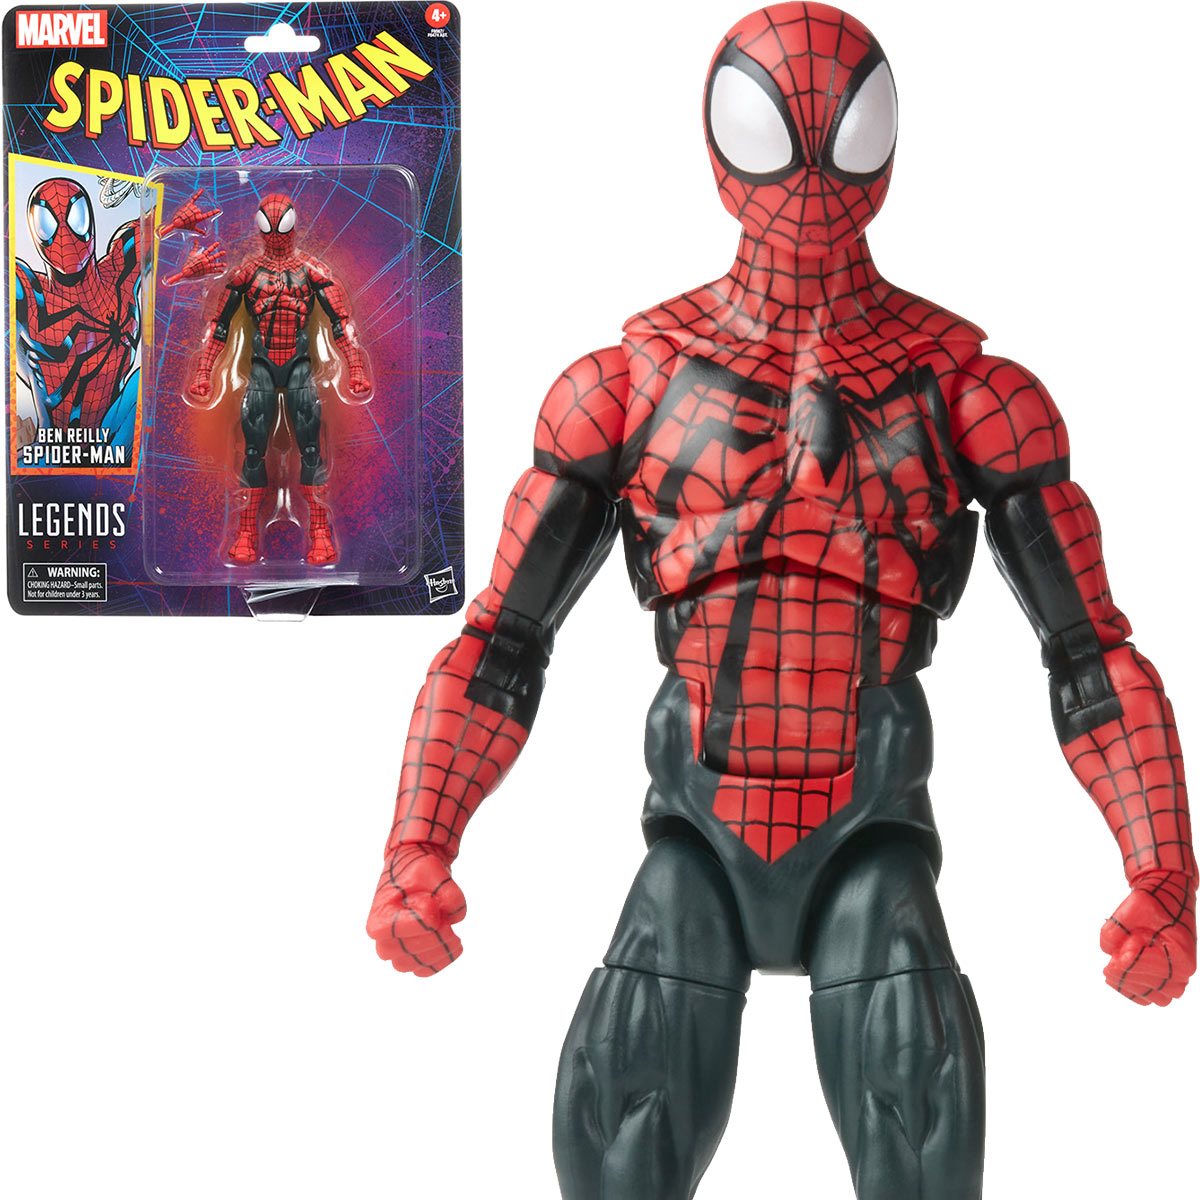 Spider-Man Retro Marvel Legends Ben Reilly Spider-Man Hasbro